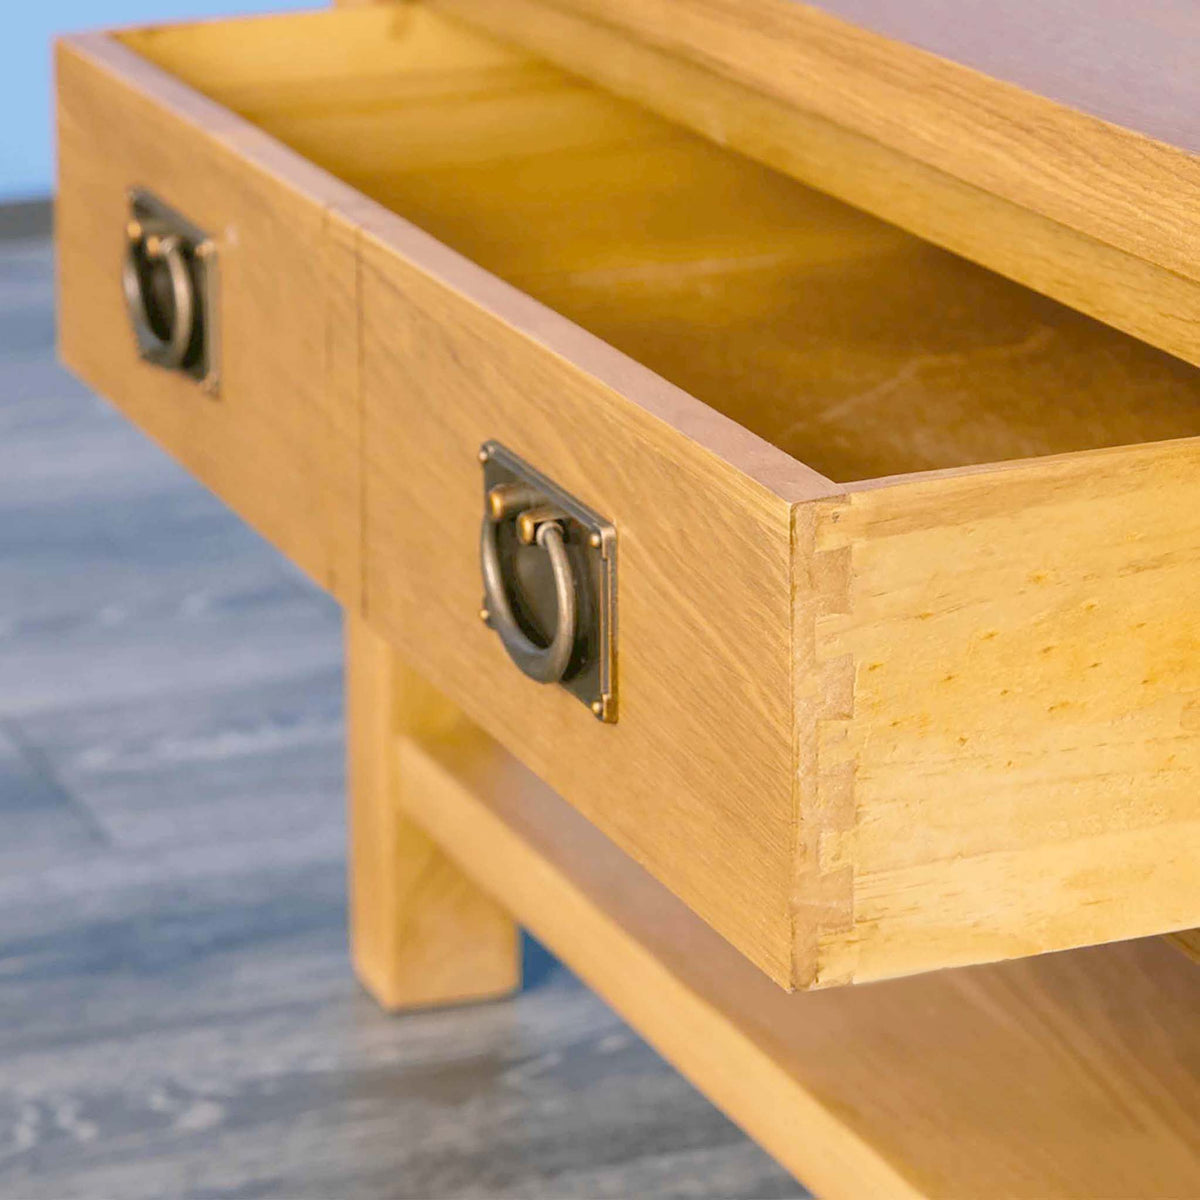 Surrey Oak Coffee Table - Showing drawer open